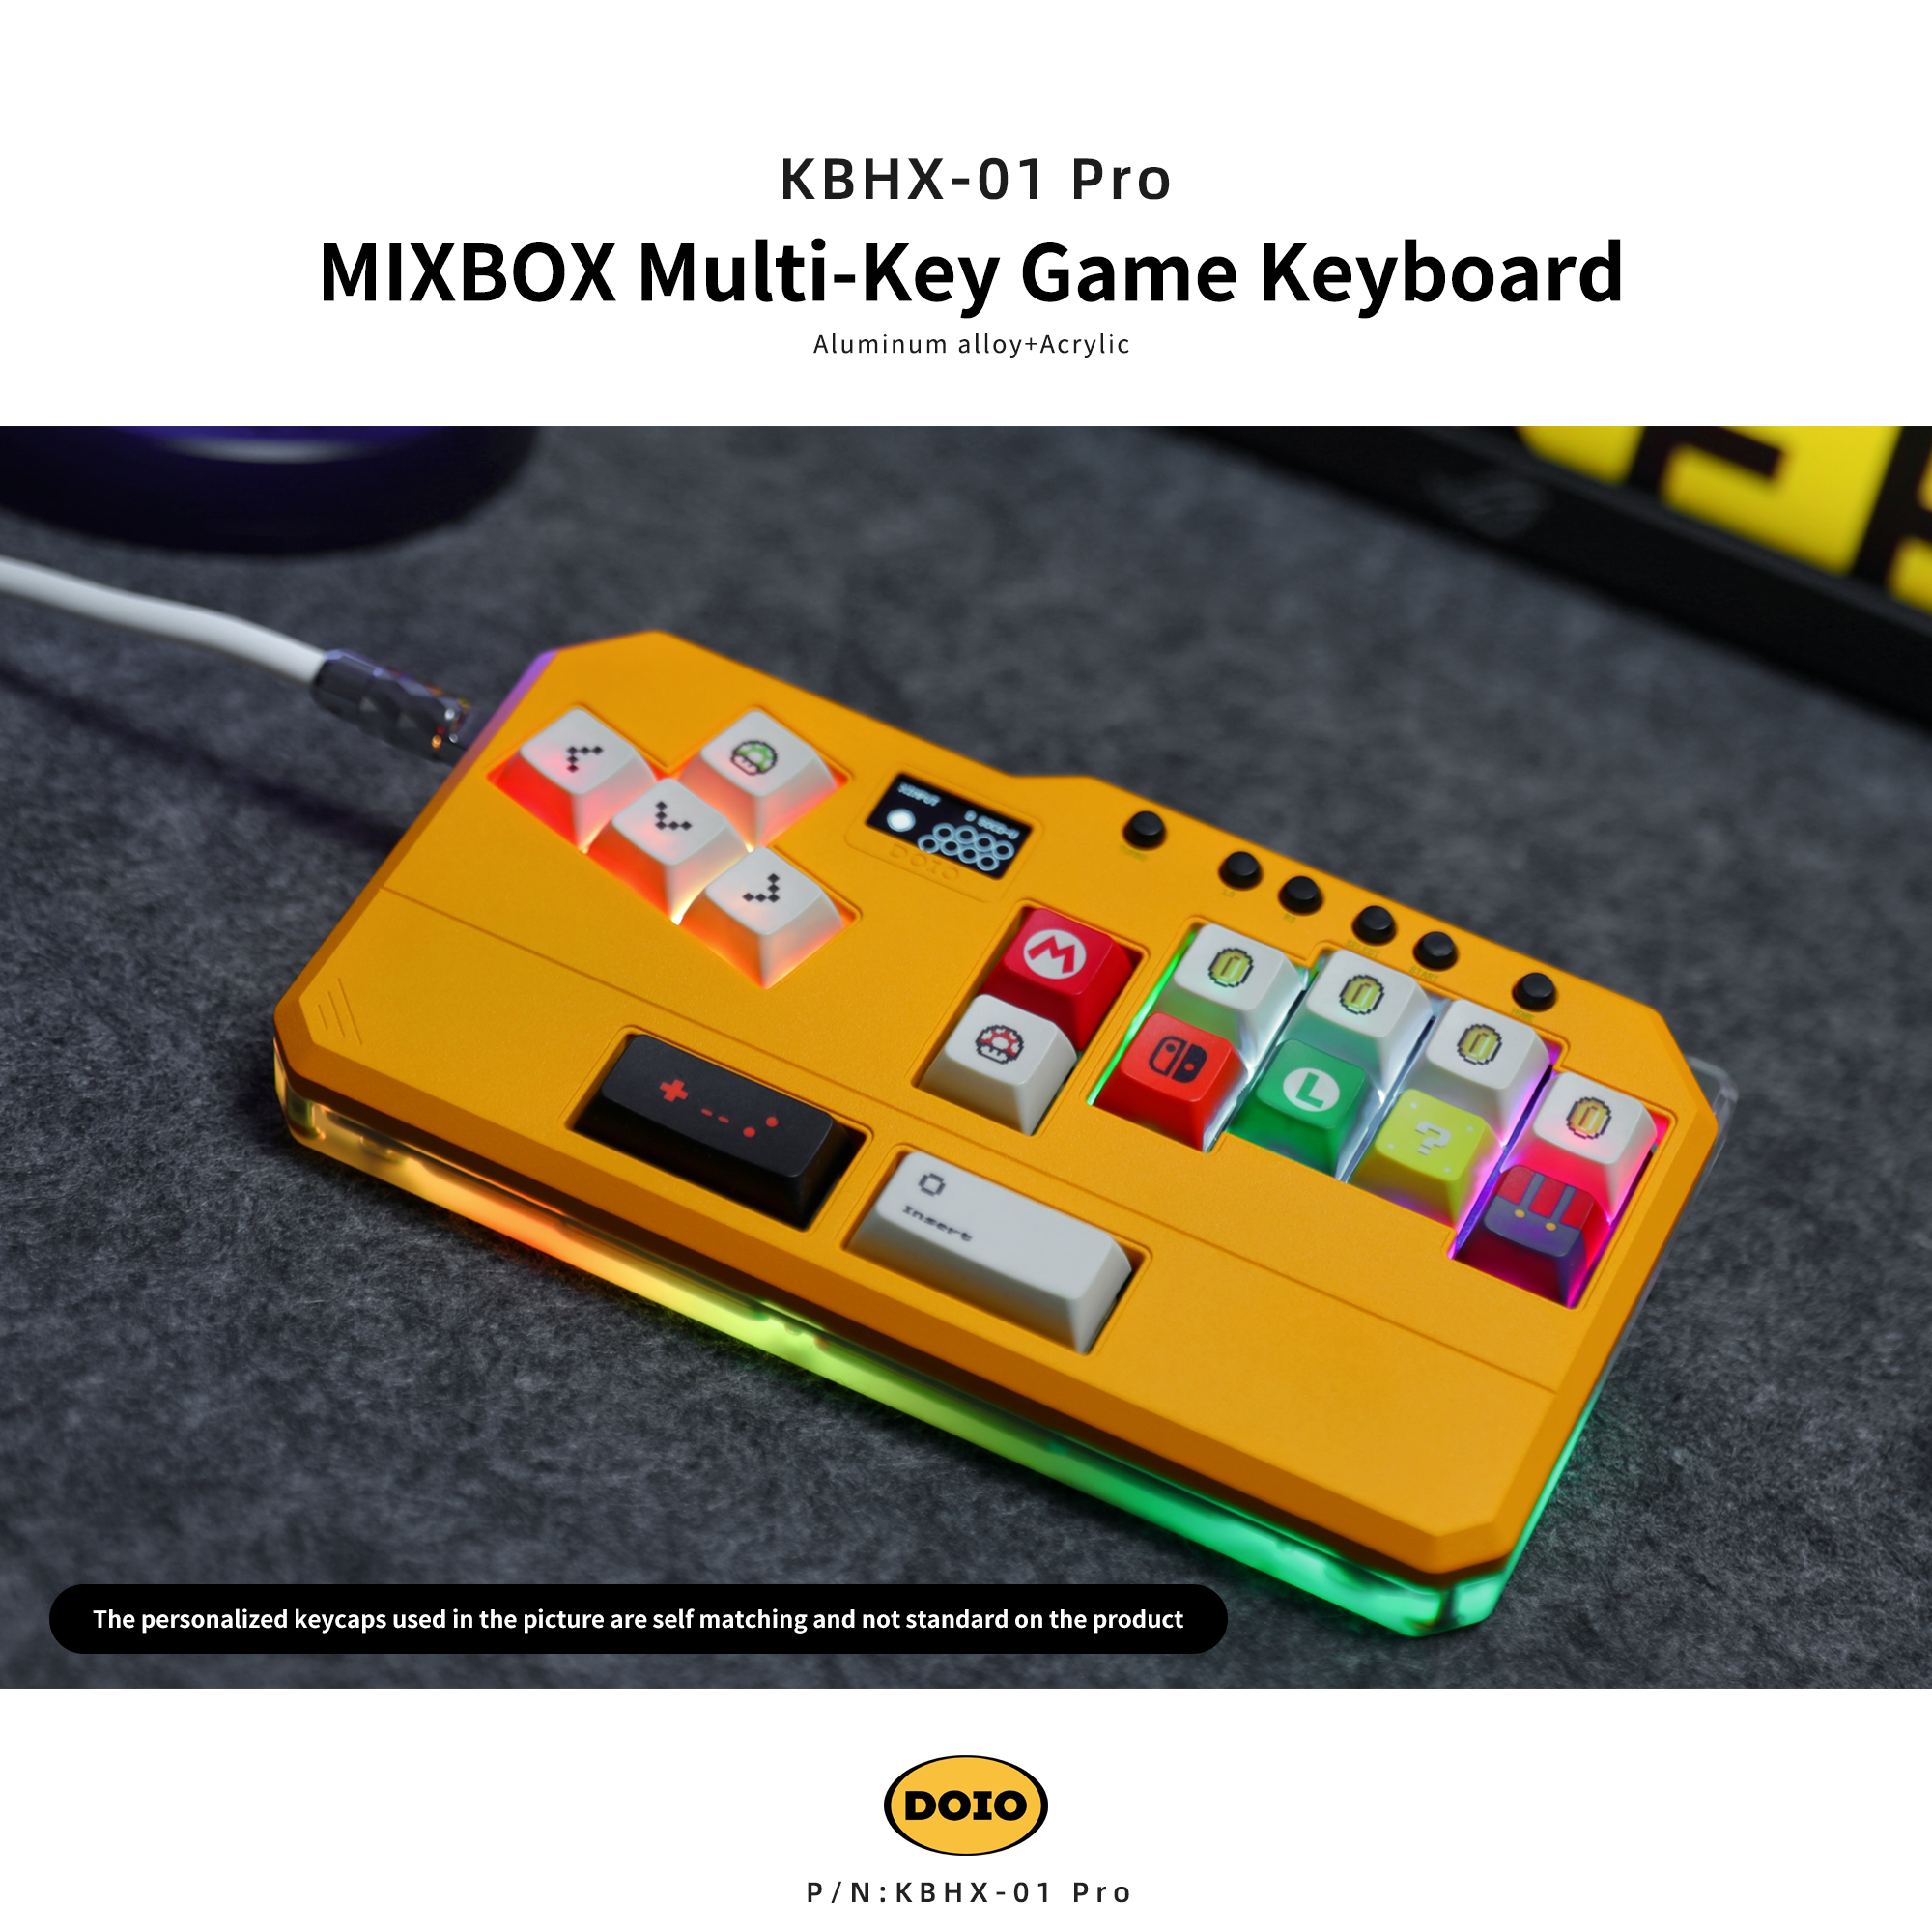 MIXBOX Multi-Key Game Keyboard